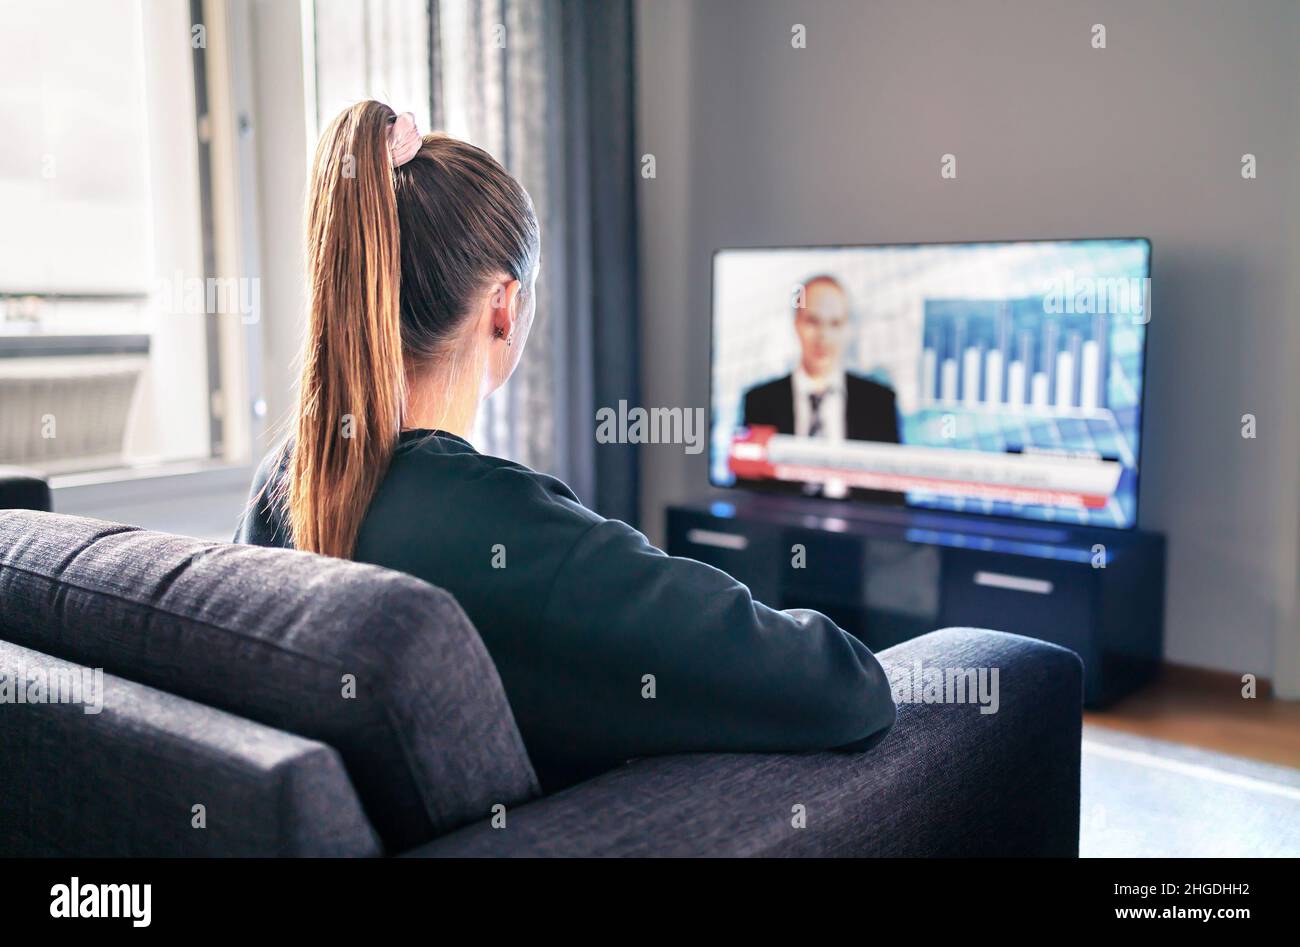 Noticias de televisión. Mujer viendo la televisión en la sala de estar. Reportero, ancla y anfitrión del estudio en la pantalla con los titulares del noticiero. Persona sentada. Foto de stock